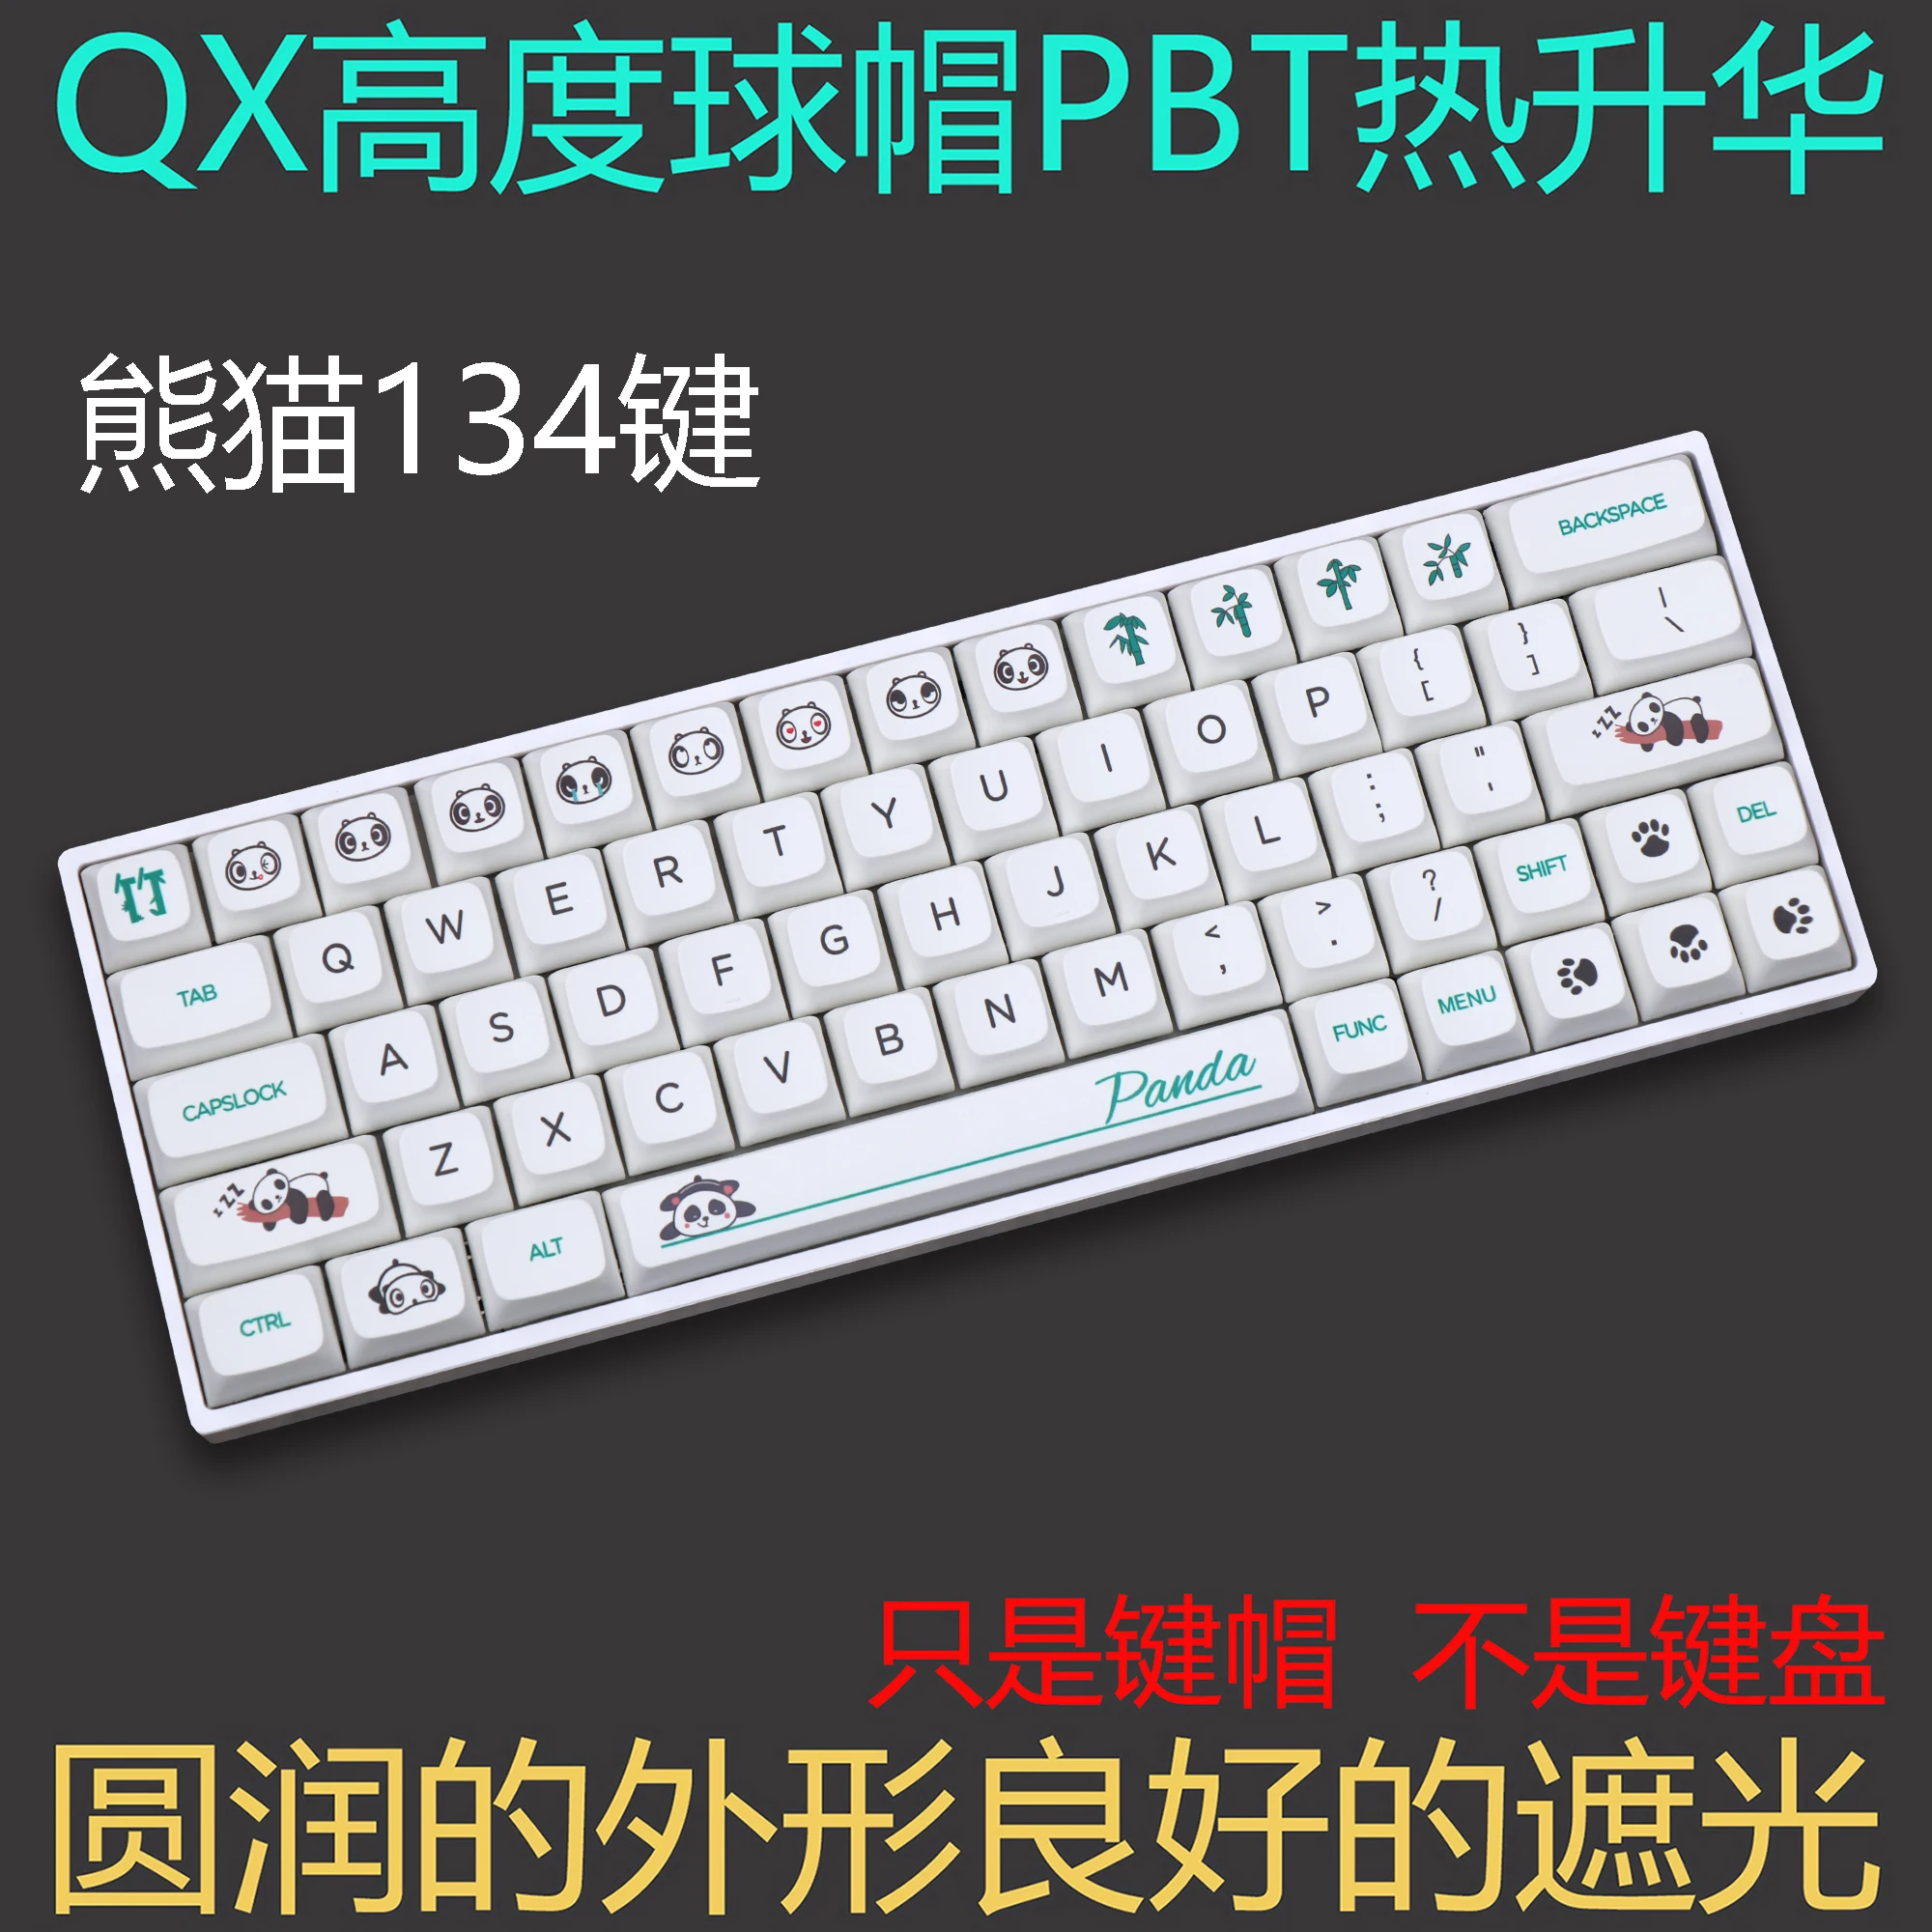 

Набор колпачков для механической клавиатуры GMK Panda 139 клавиши PBT краска-сублимация XDA профиль